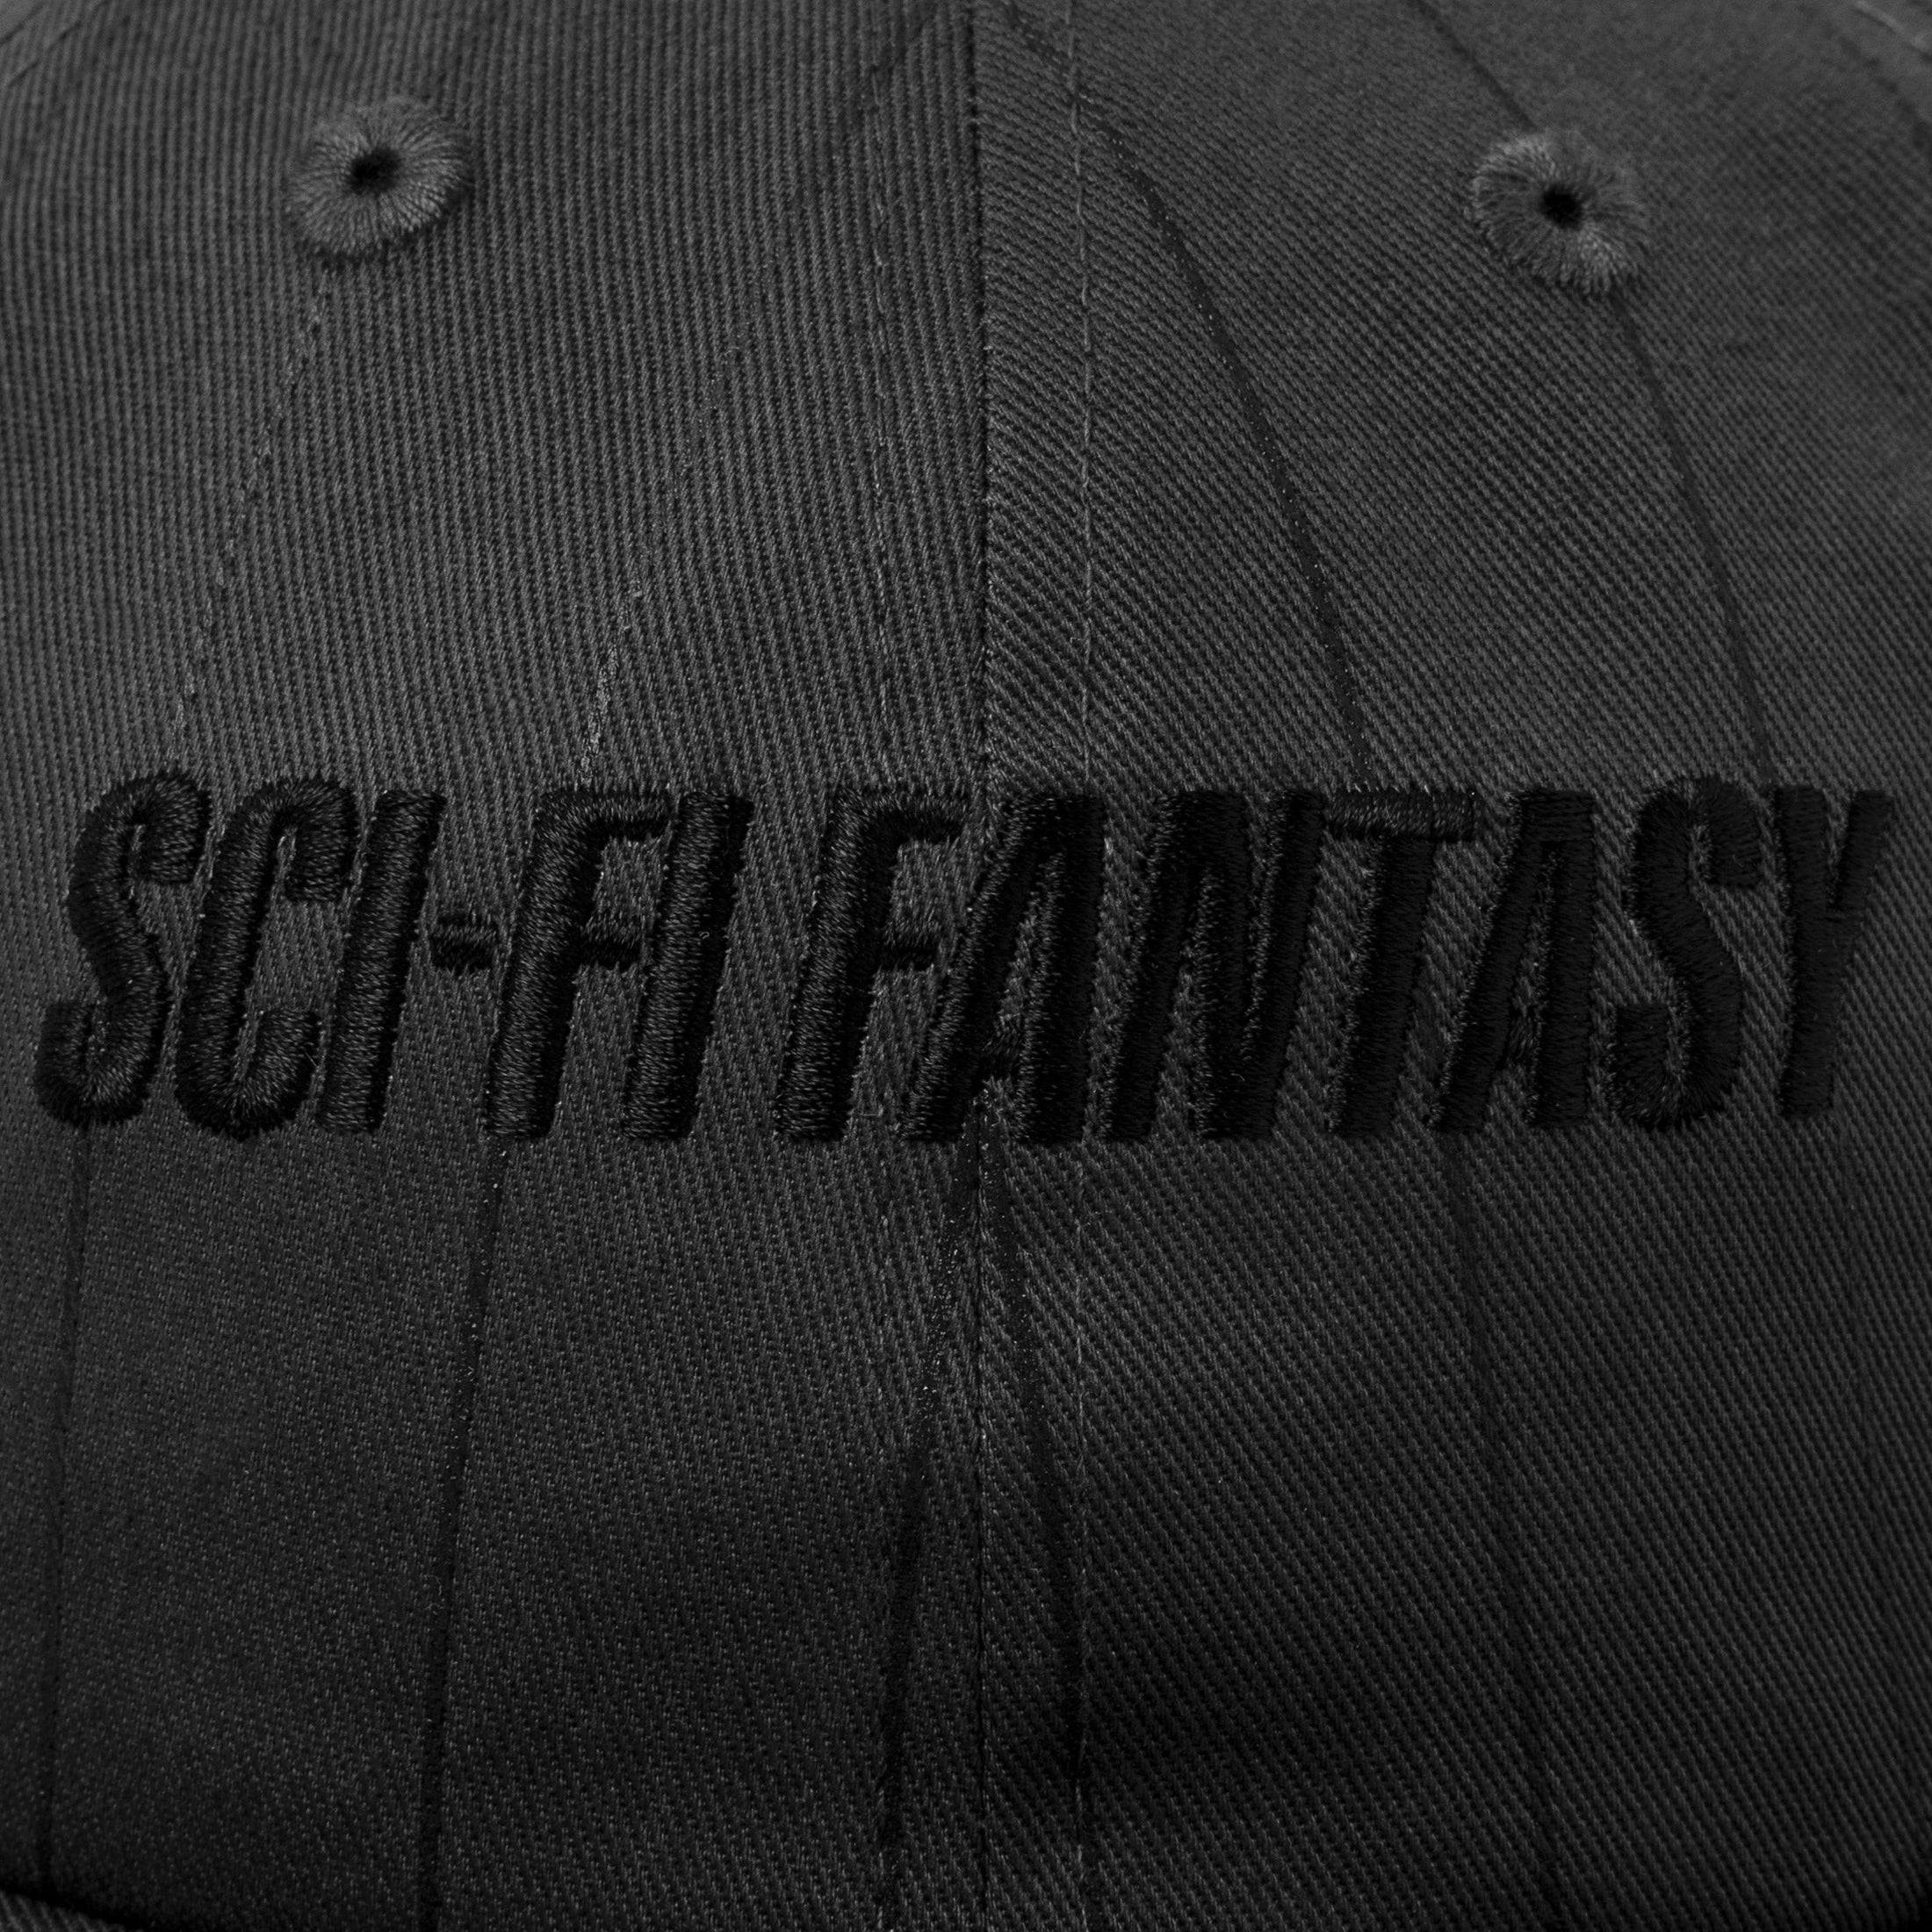 Sci-Fi Fantasy Fast Stripe Cap Charcoal